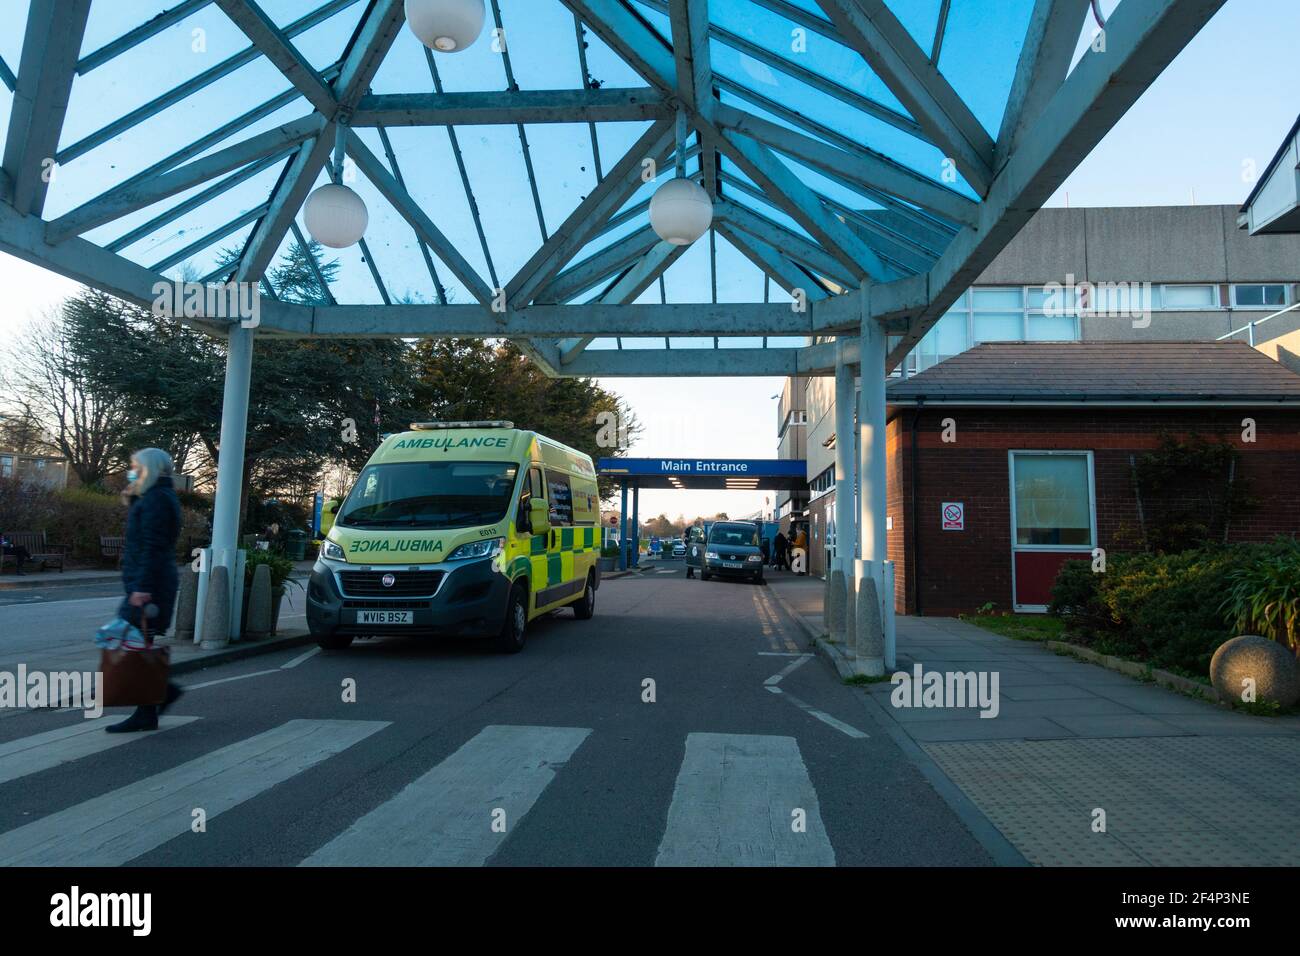 Eastbourne Hospital, ingresso principale, ambulanza in attesa, eastbourne, East sussex, regno unito Foto Stock